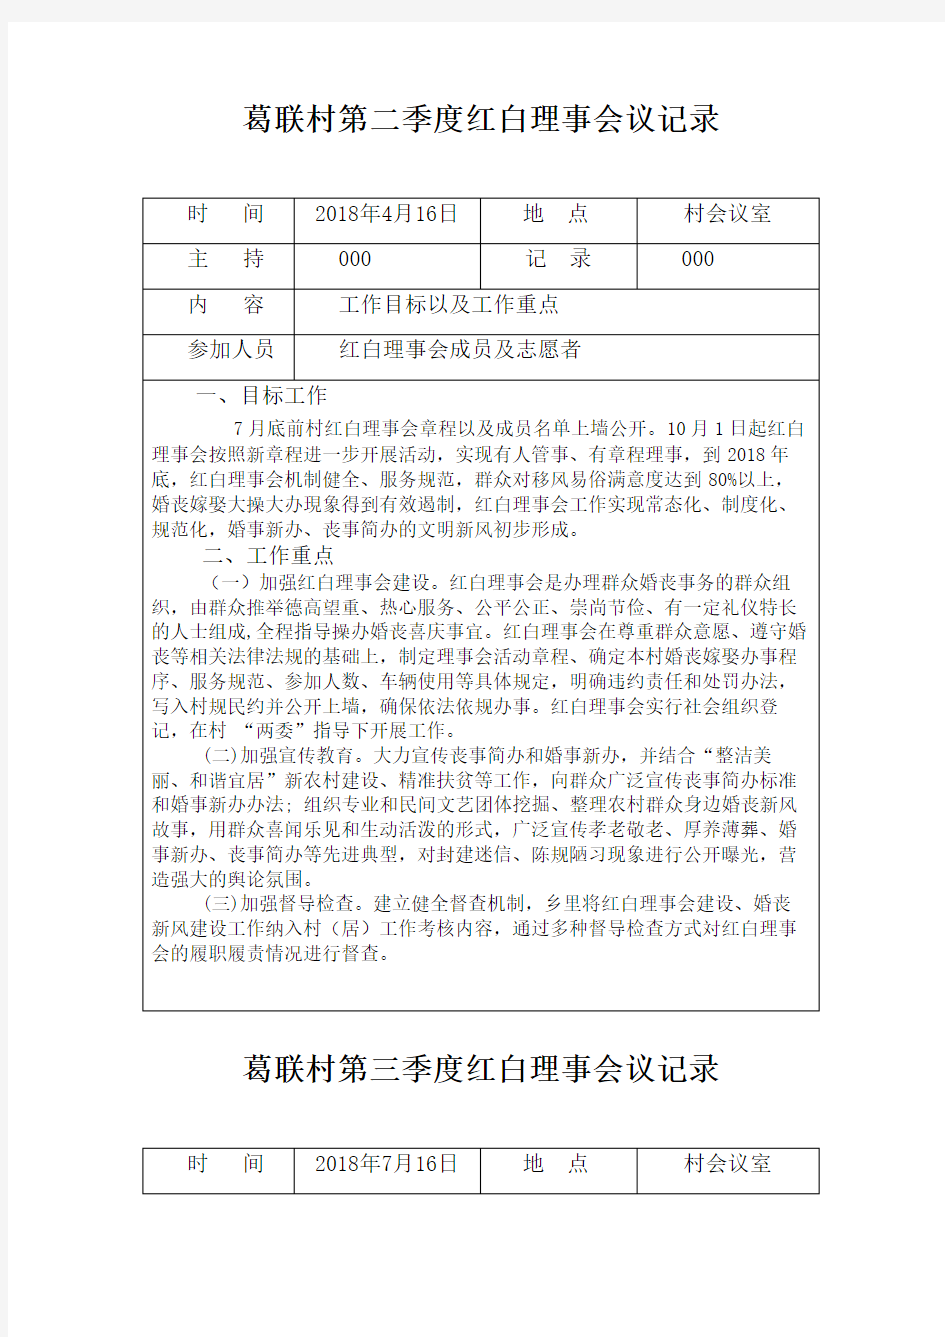 葛联村红白理事会会议记录表